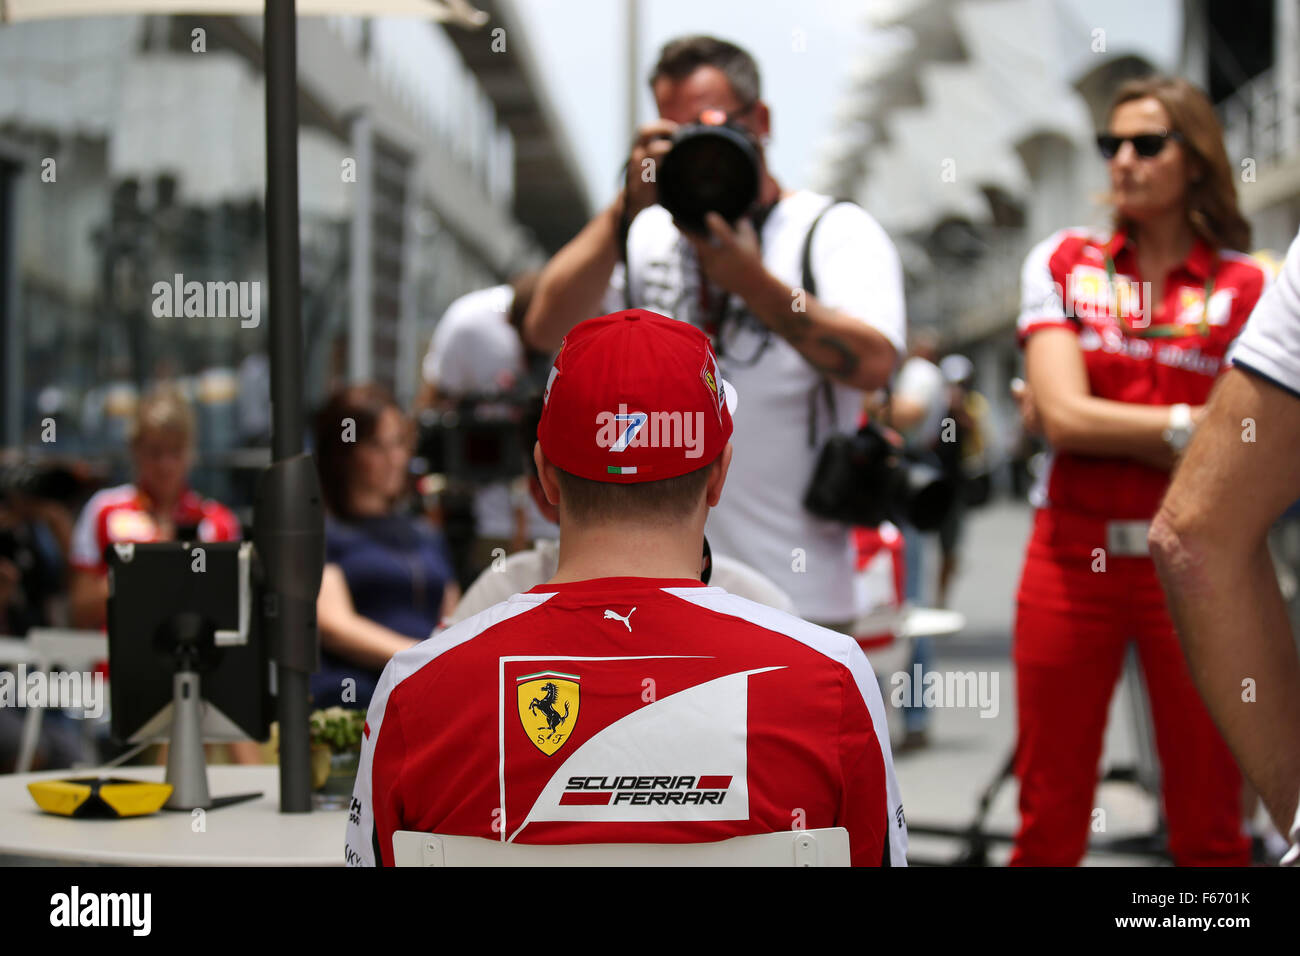 Automovilismo: Campeonato del Mundo de Fórmula Uno FIA 2015, Gran Premio de Brasil, #7 Kimi Raikkonen (FIN, la Scuderia Ferrari), Foto de stock